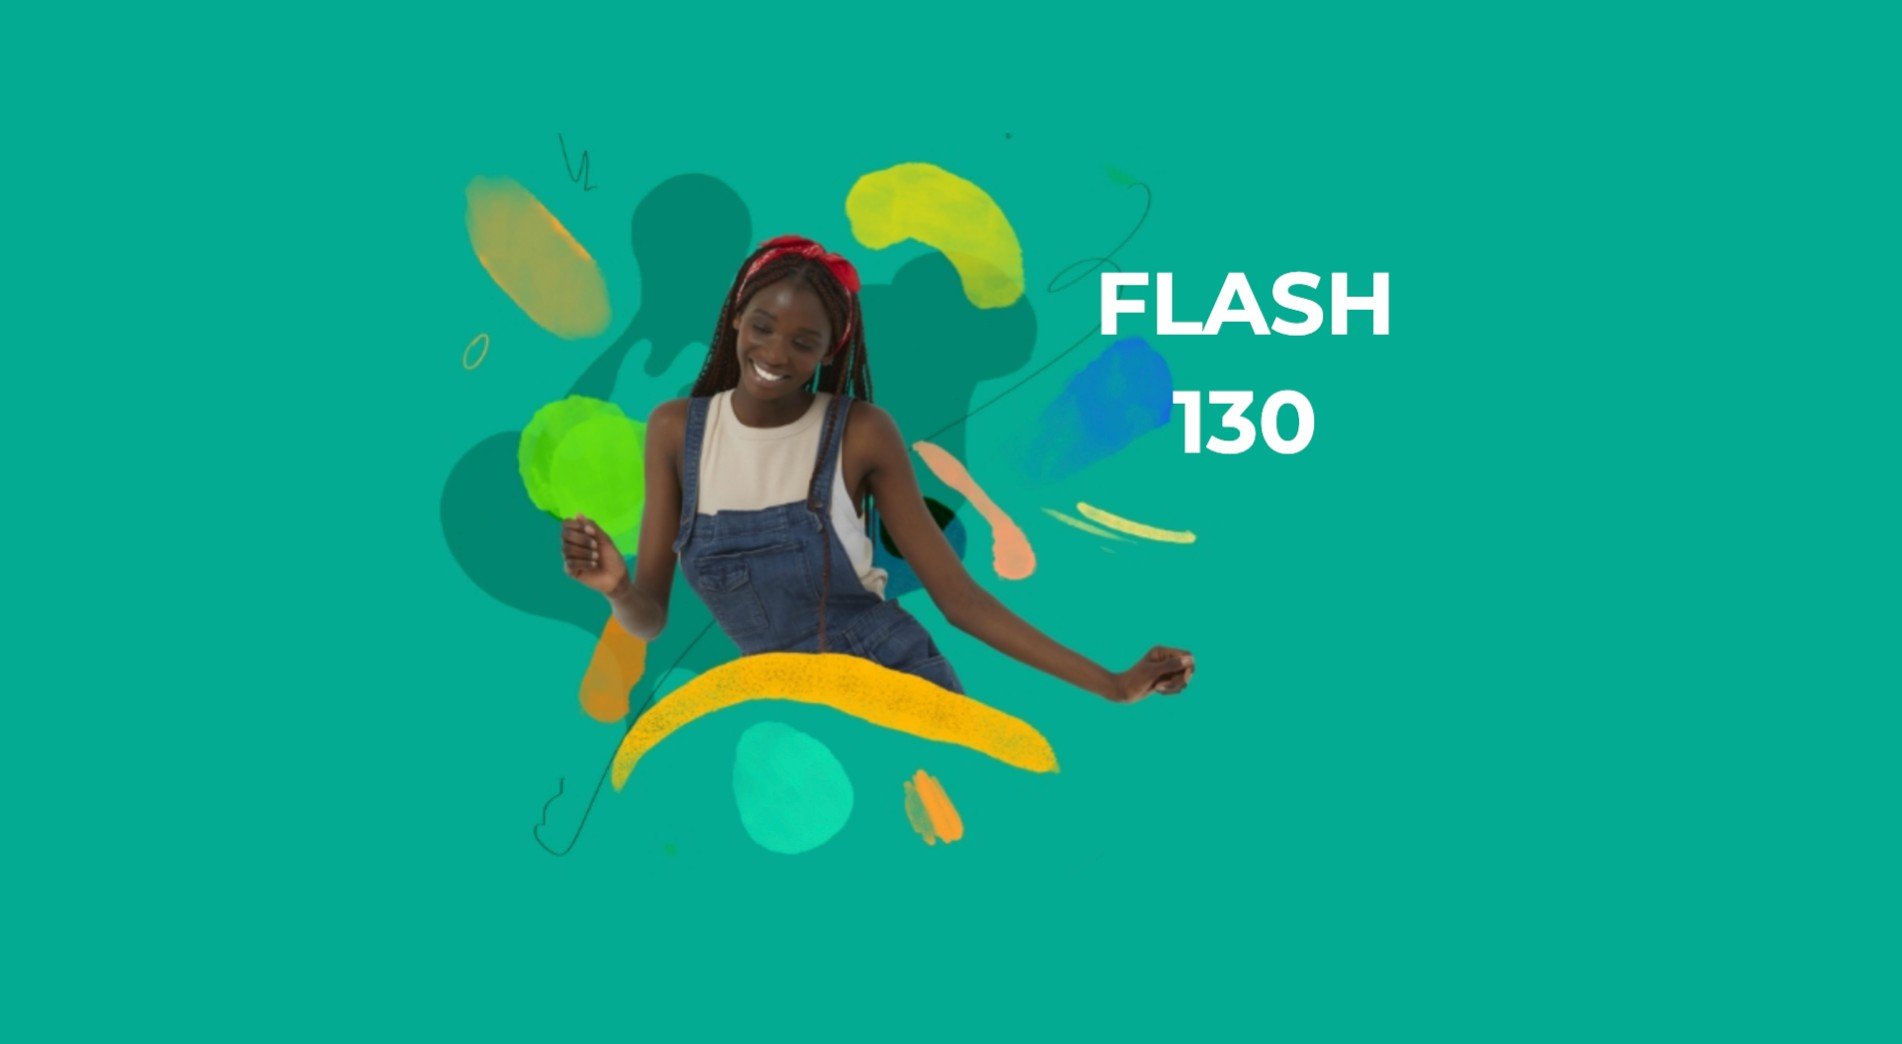 Iliad Flash 130 disponibile fino al 6 luglio: una GIGA estate a 8,99 euro/mese